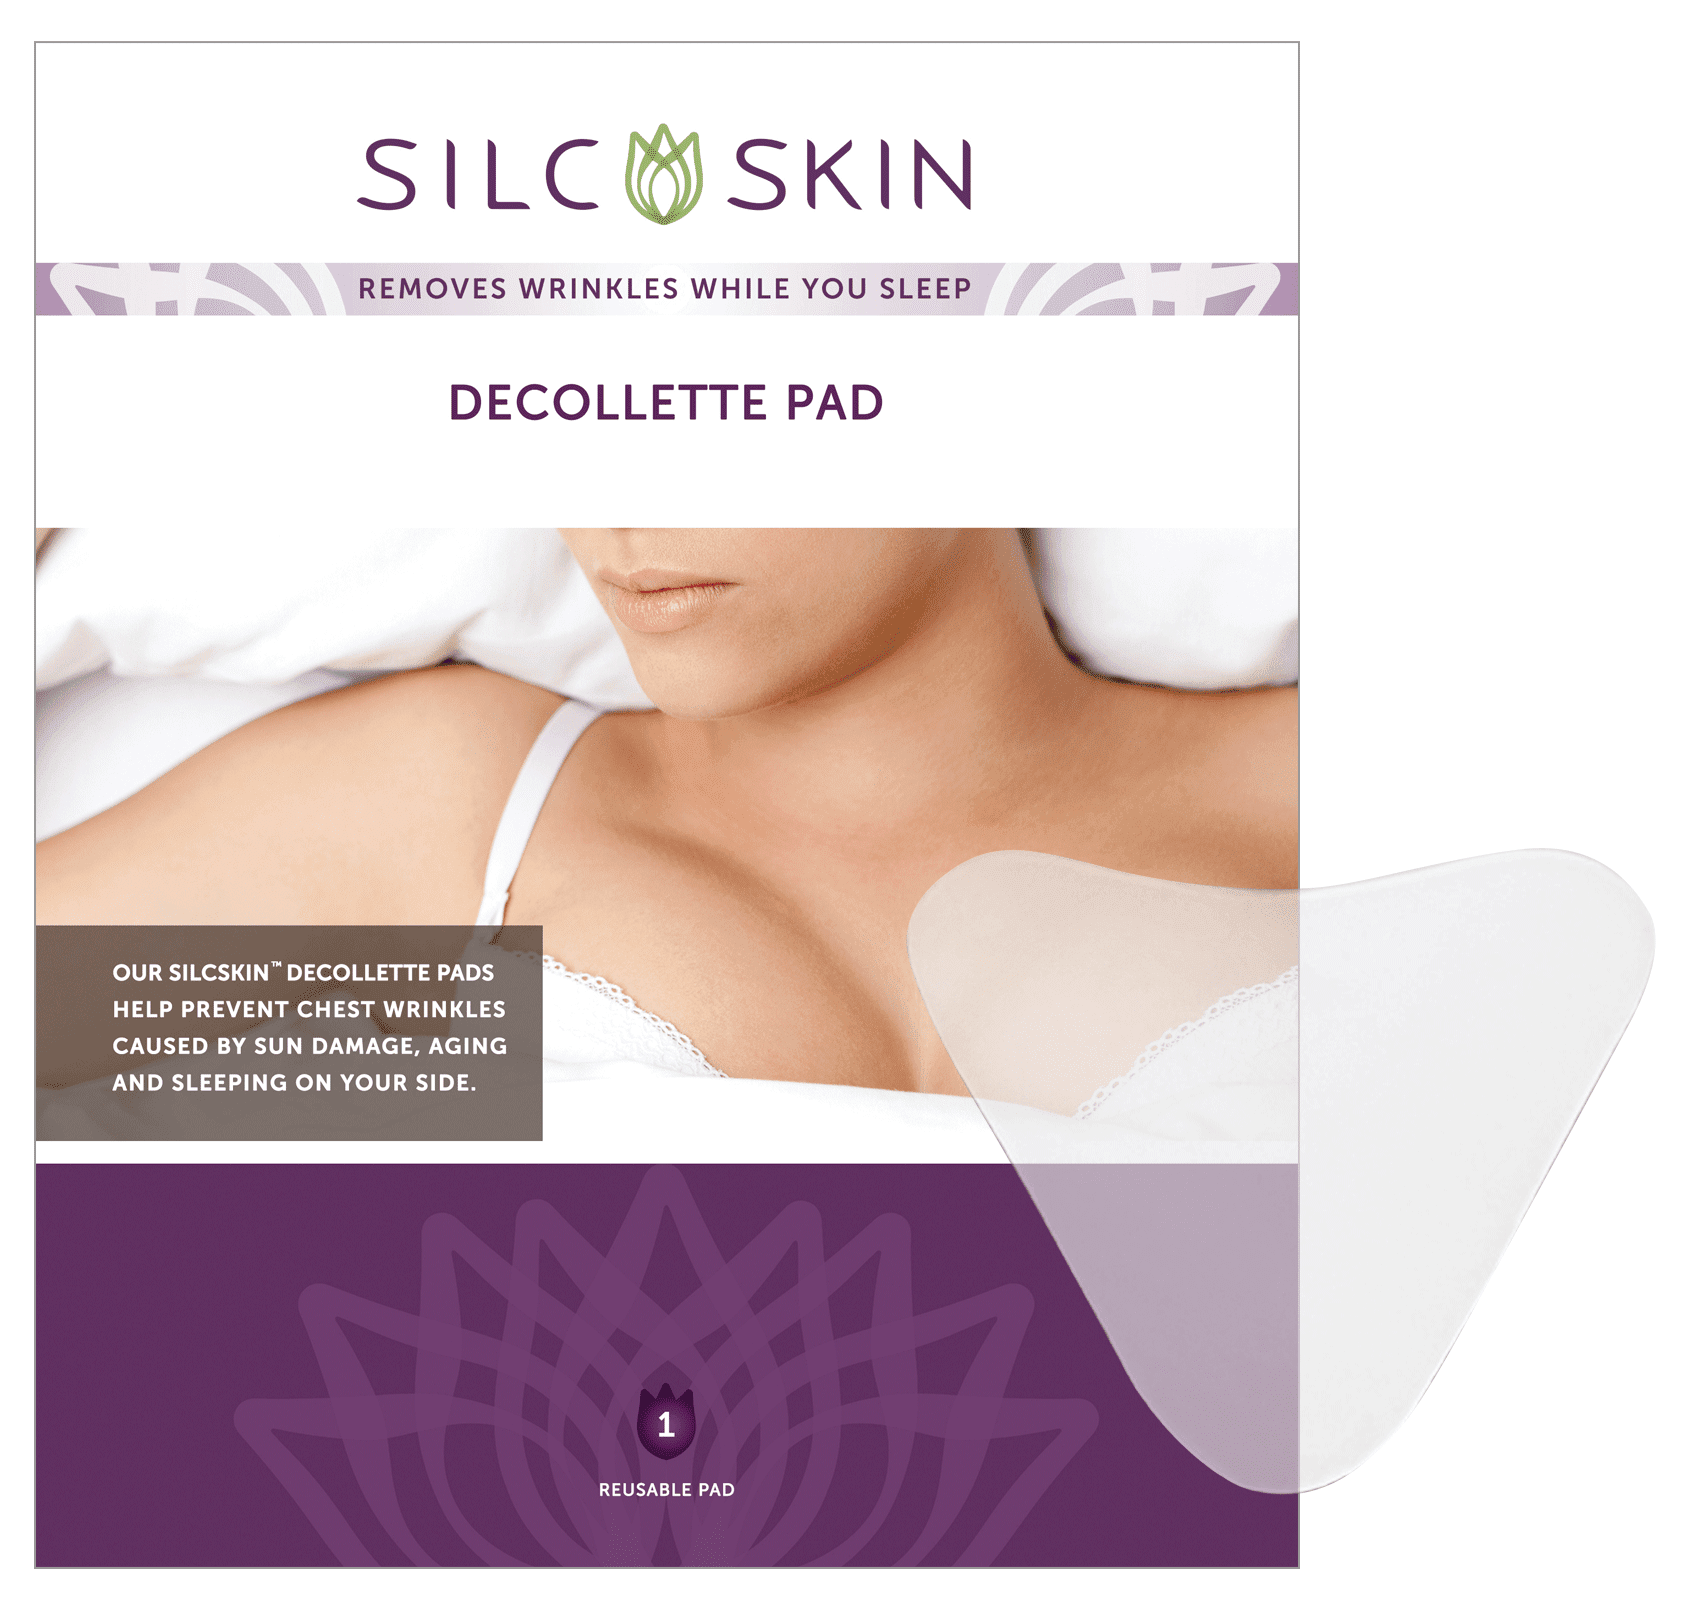 Calvet Correct & Prevent Chest Wrinkles 1 pad Silc Skin Decollette Pad 